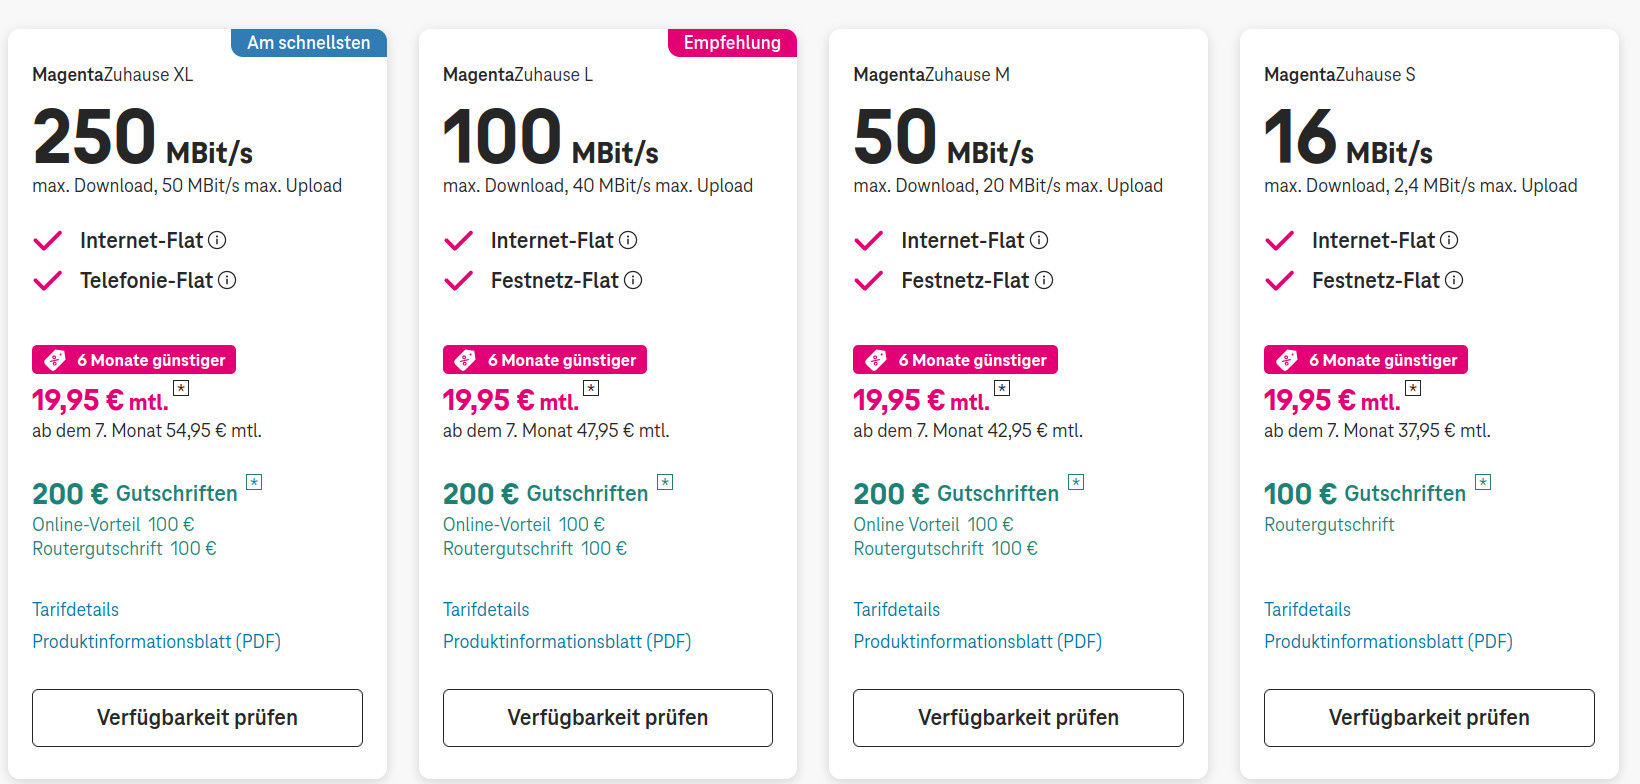 Telekom Turbo VDSL mit 250 Mbit ab 19,95 Euro und bis zu 200 Euro Gutschrift